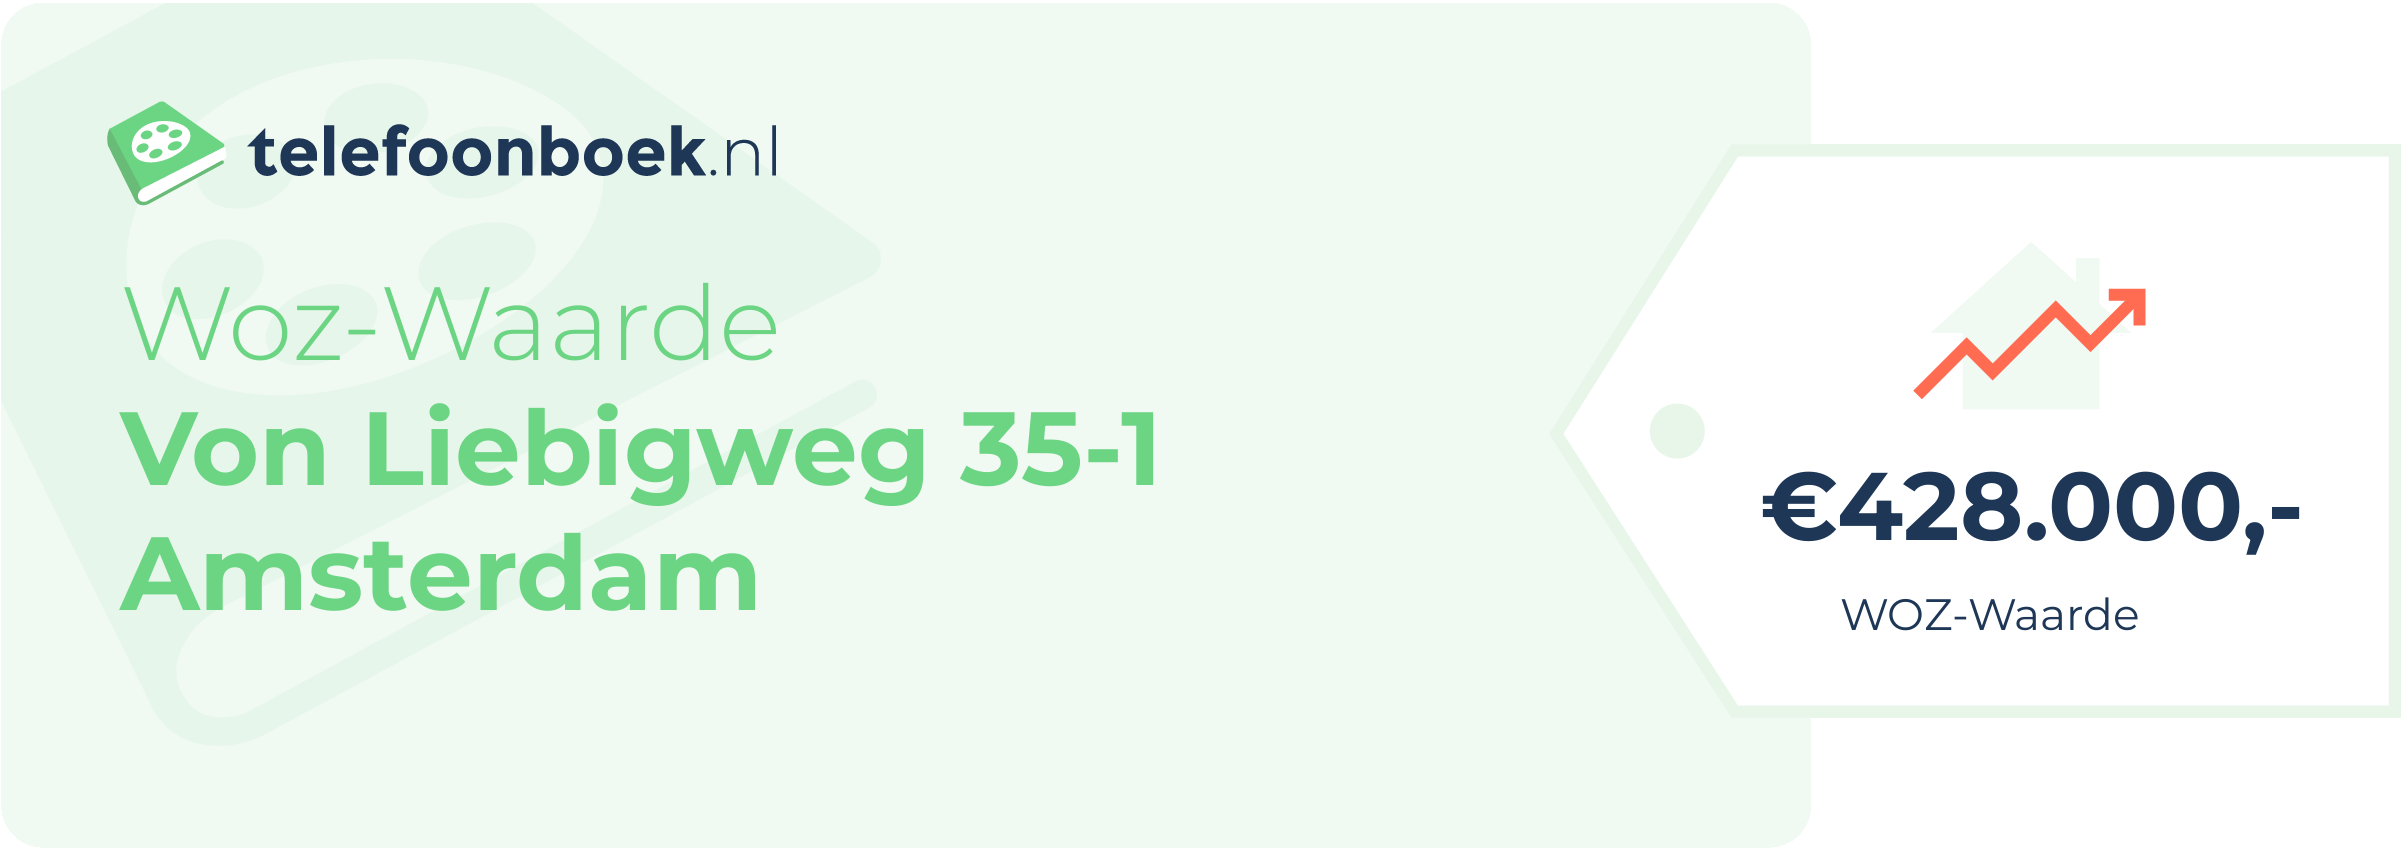 WOZ-waarde Von Liebigweg 35-1 Amsterdam